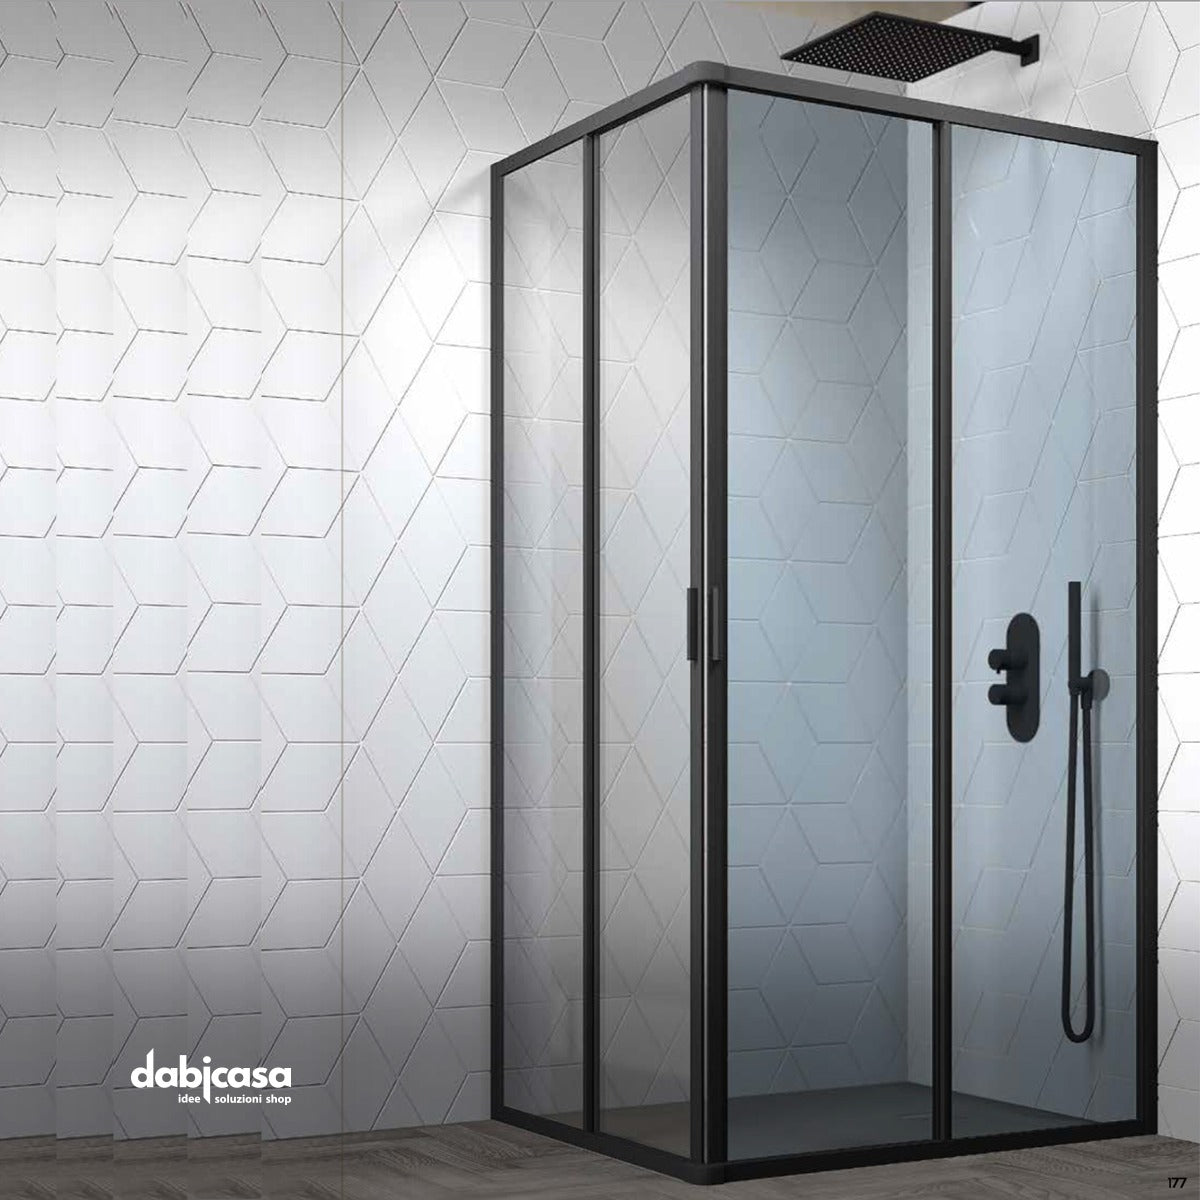 Box doccia "New Smeralda" angolare 70x70 in alluminio e pannello in vetro con profili nero essenza freeshipping - Dabicasa